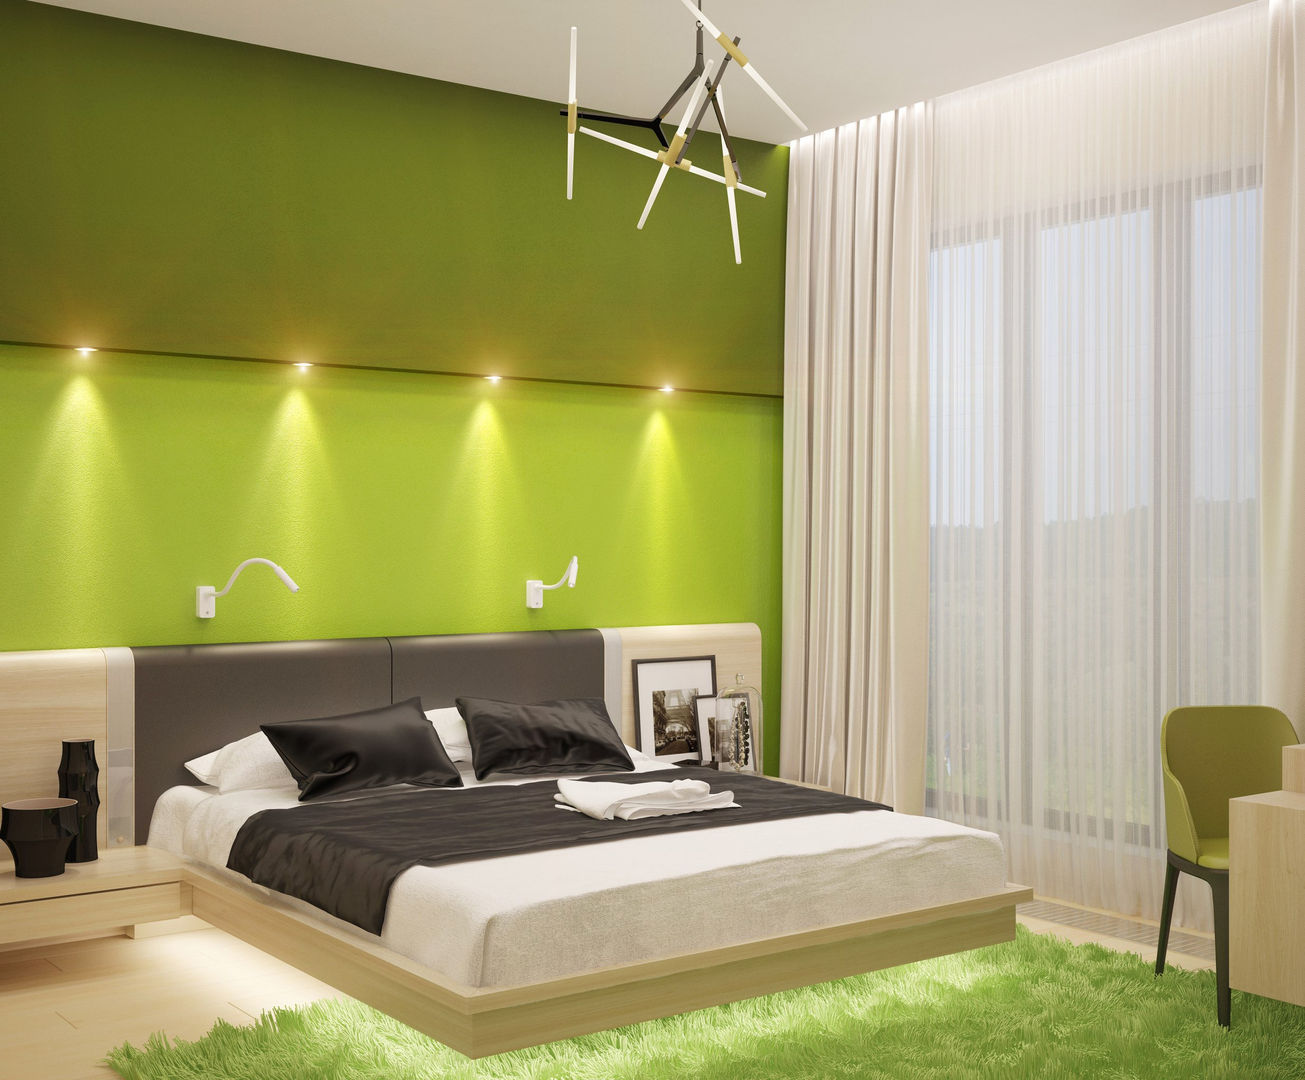 Яркие краски для спальни в стиле минимализм, Студия дизайна ROMANIUK DESIGN Студия дизайна ROMANIUK DESIGN Спальня